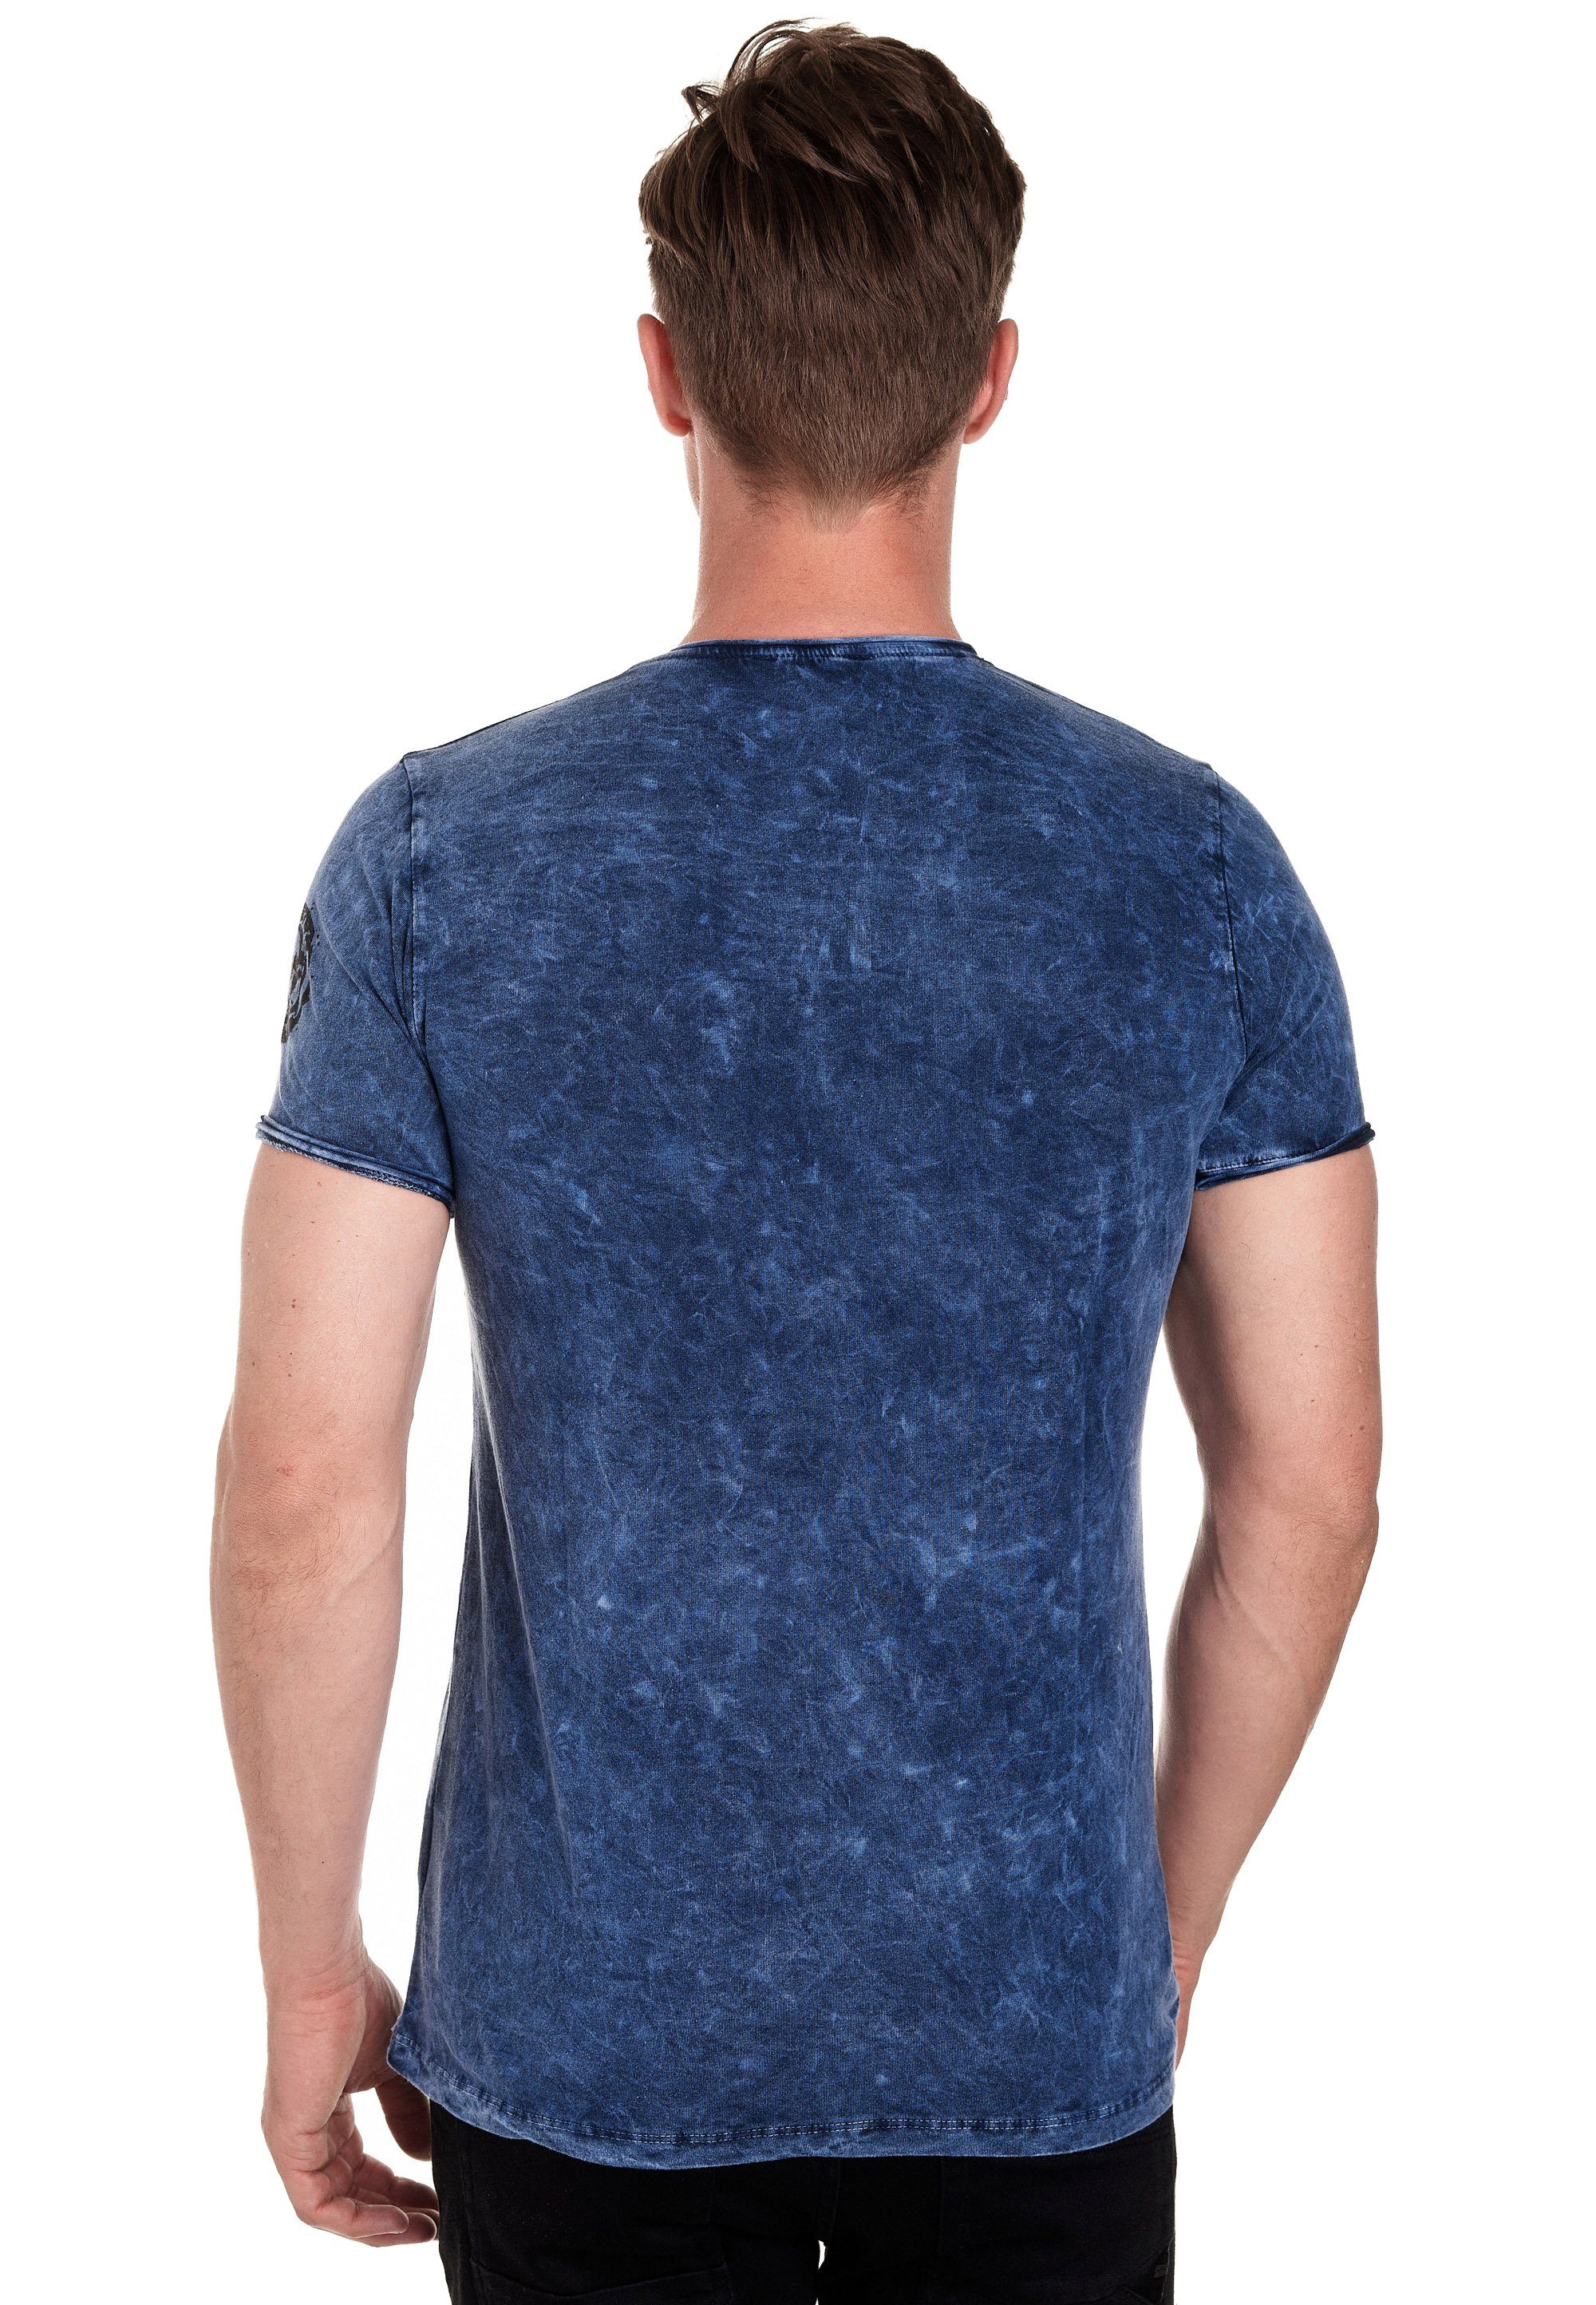 Rusty Neal T-Shirt Vintage-Look tollem blau in